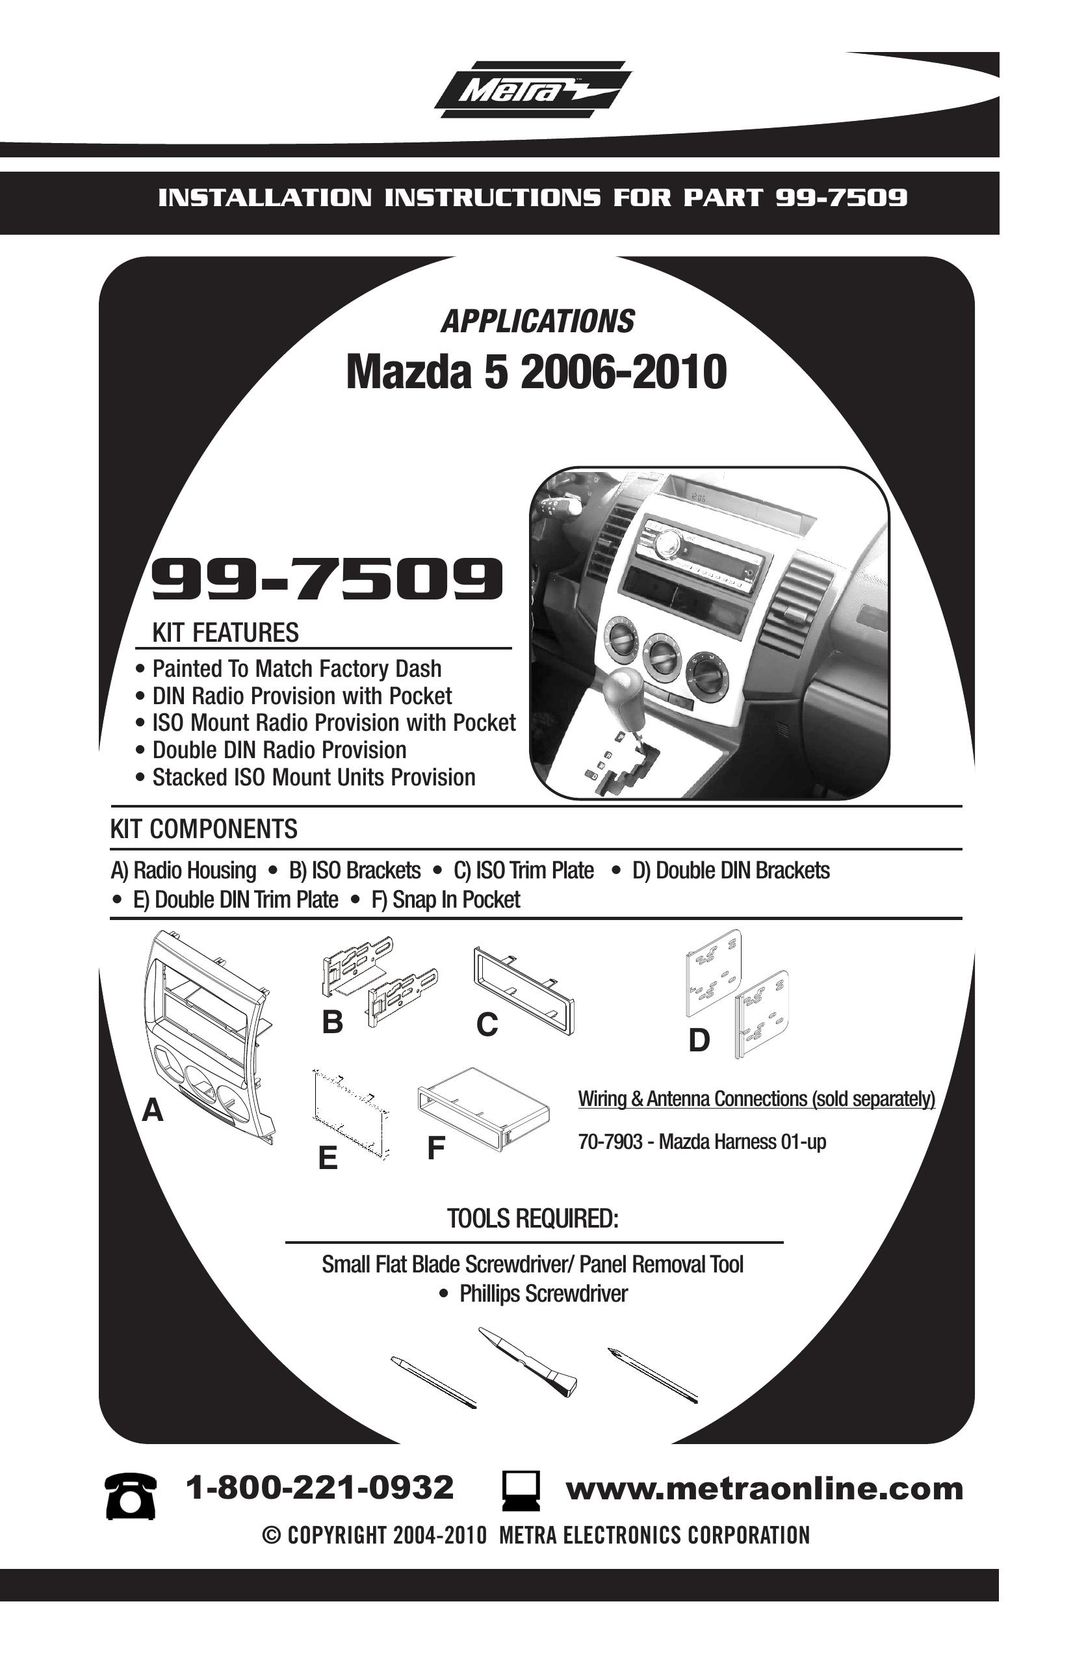 Mazda 99-7509 Car Stereo System User Manual